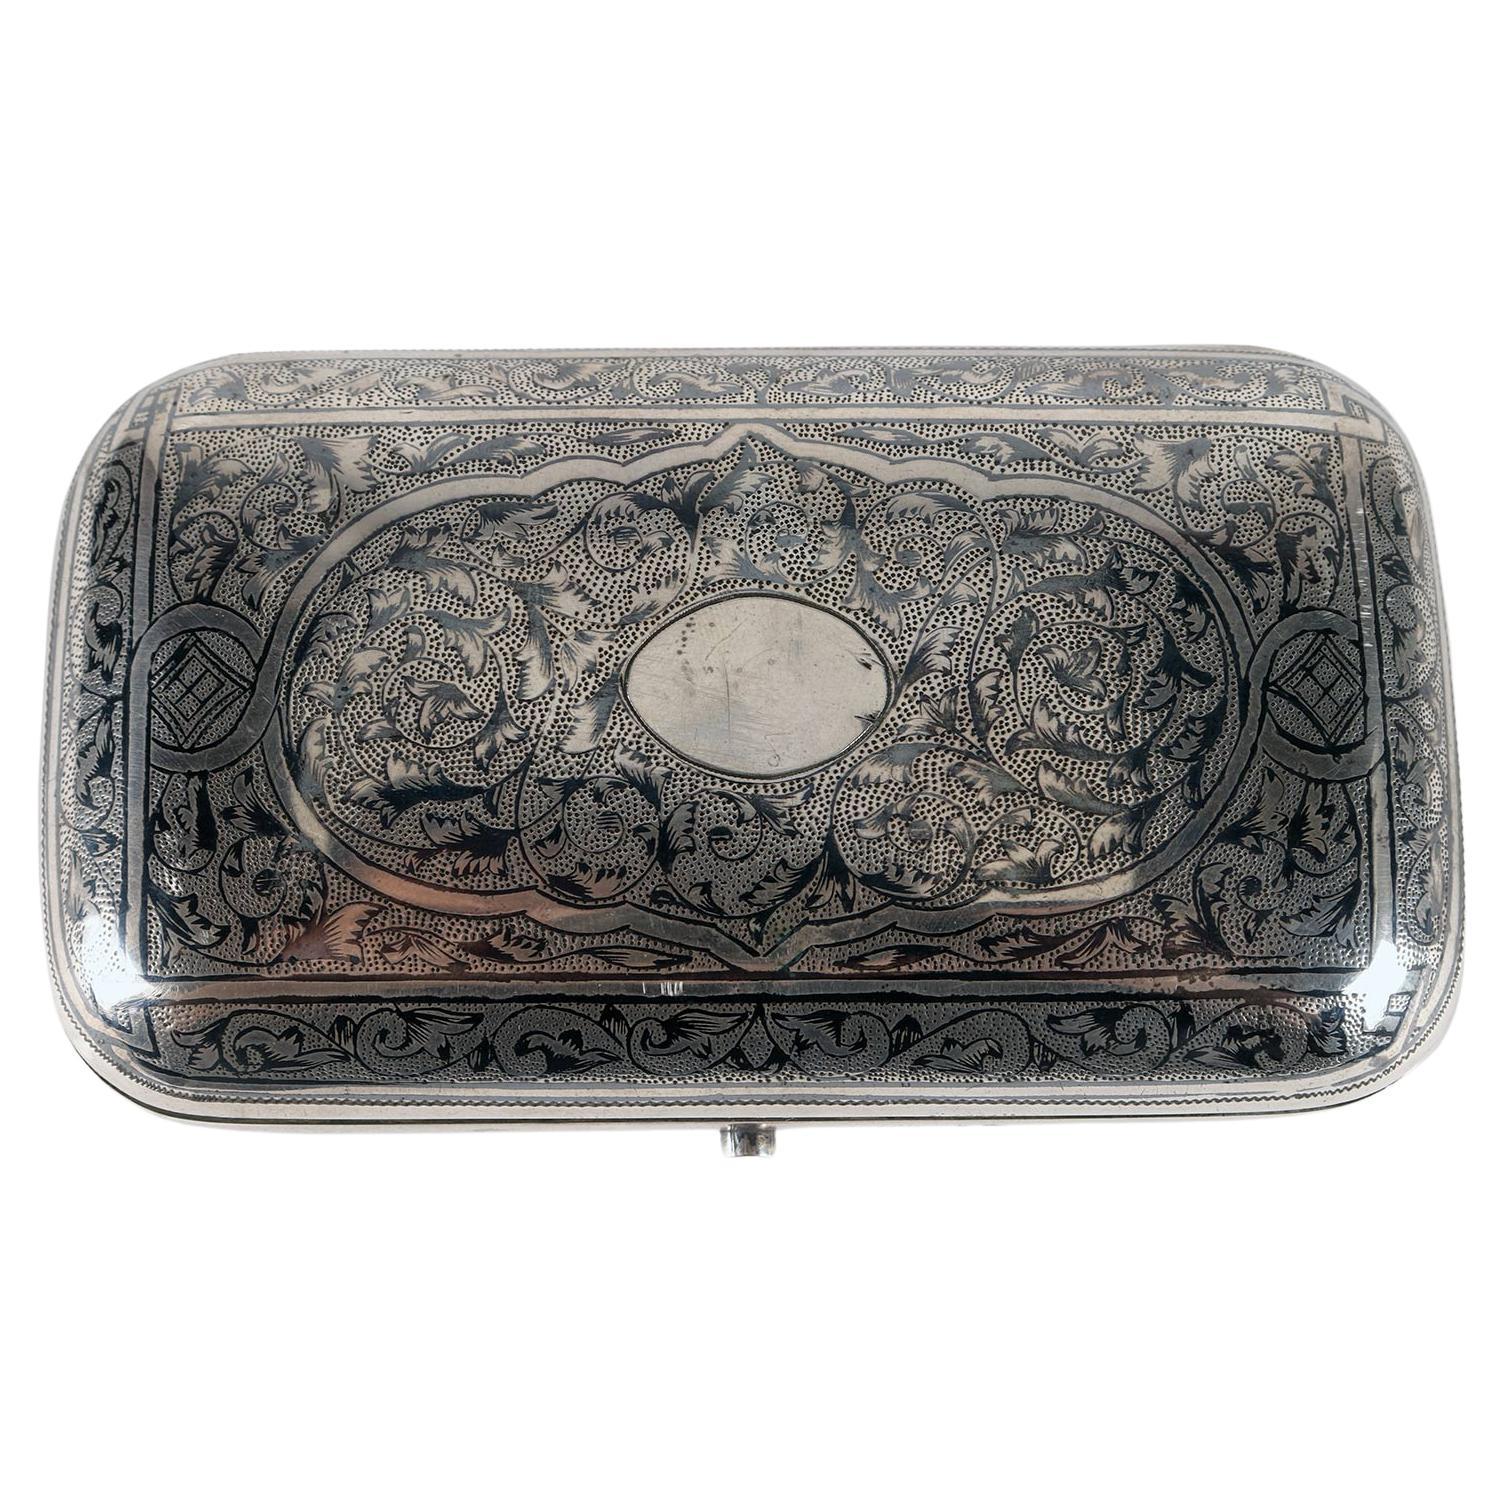 Silver and niello tobacco box, Moscow, Russia 1879. 